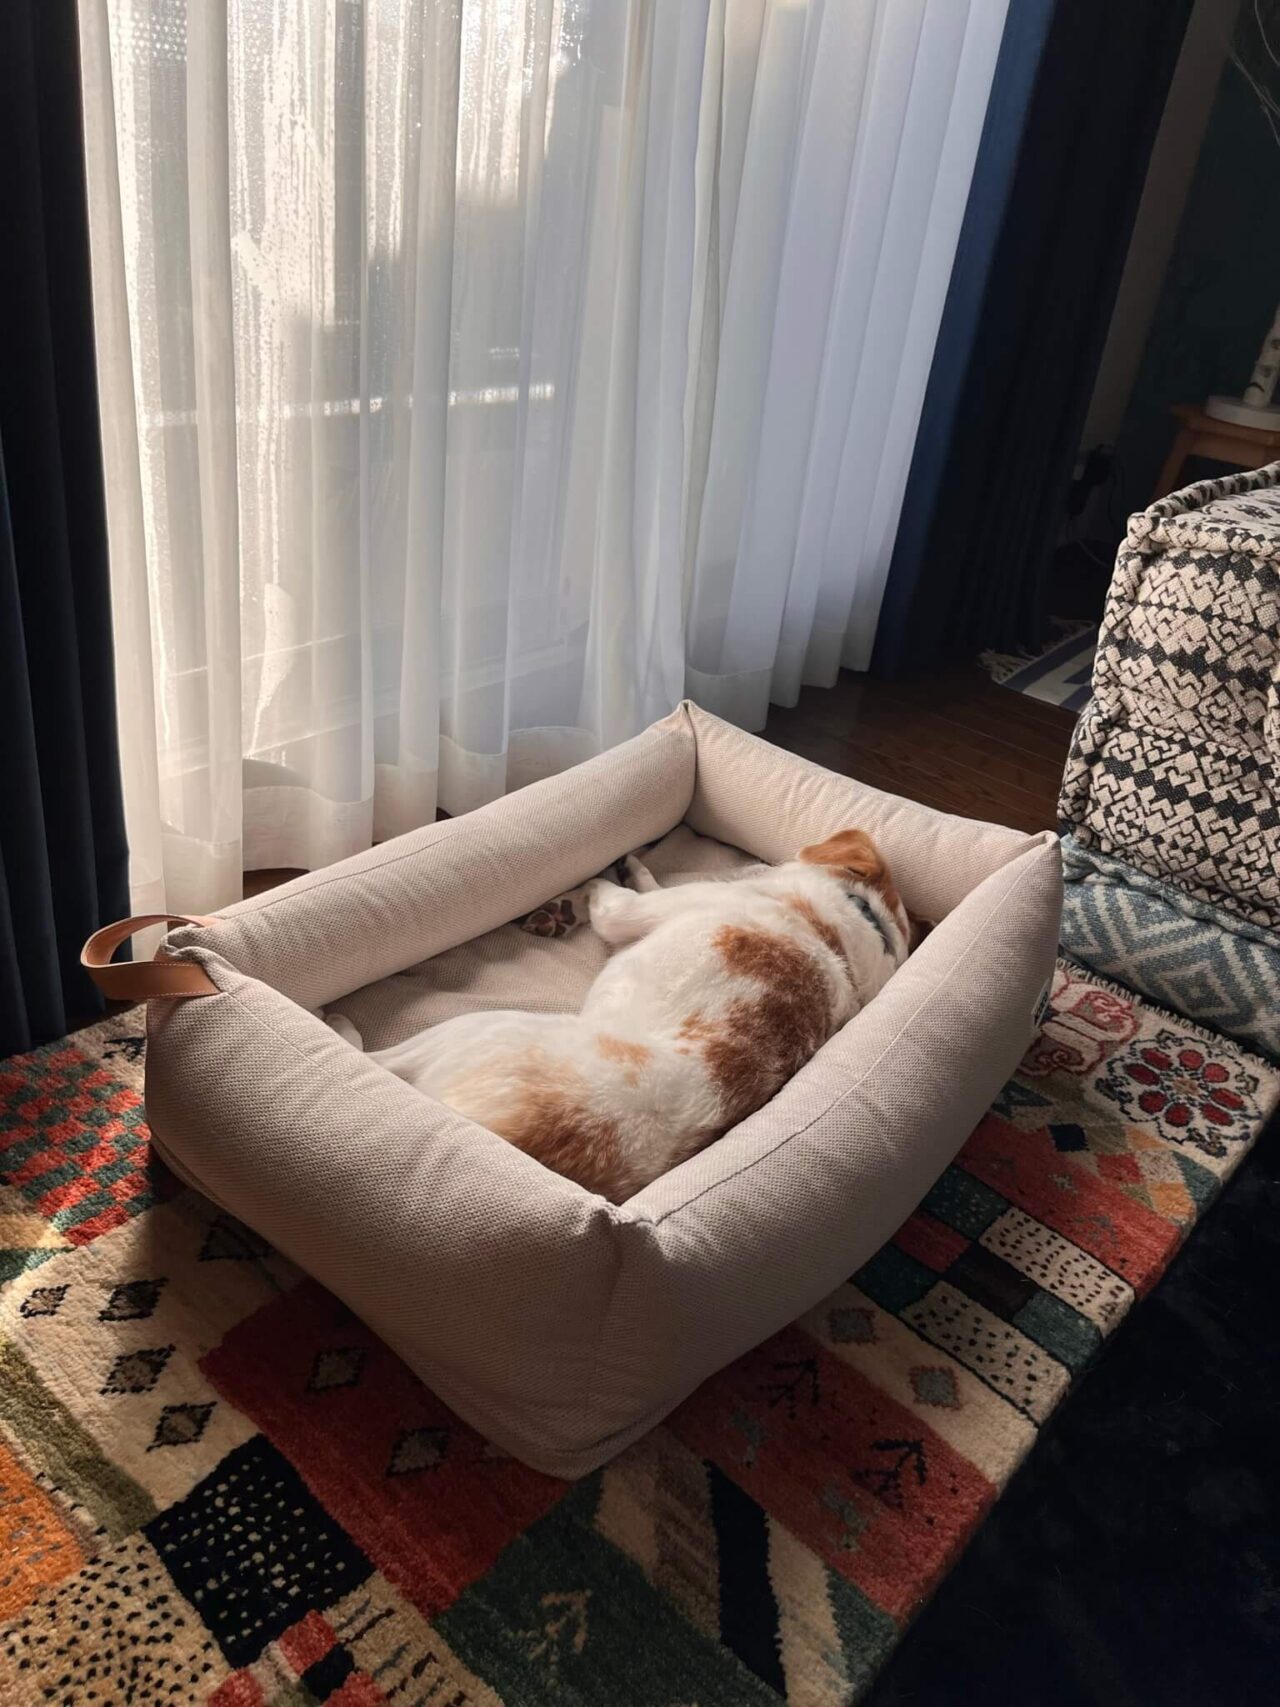 ＆COCO犬用ベッド